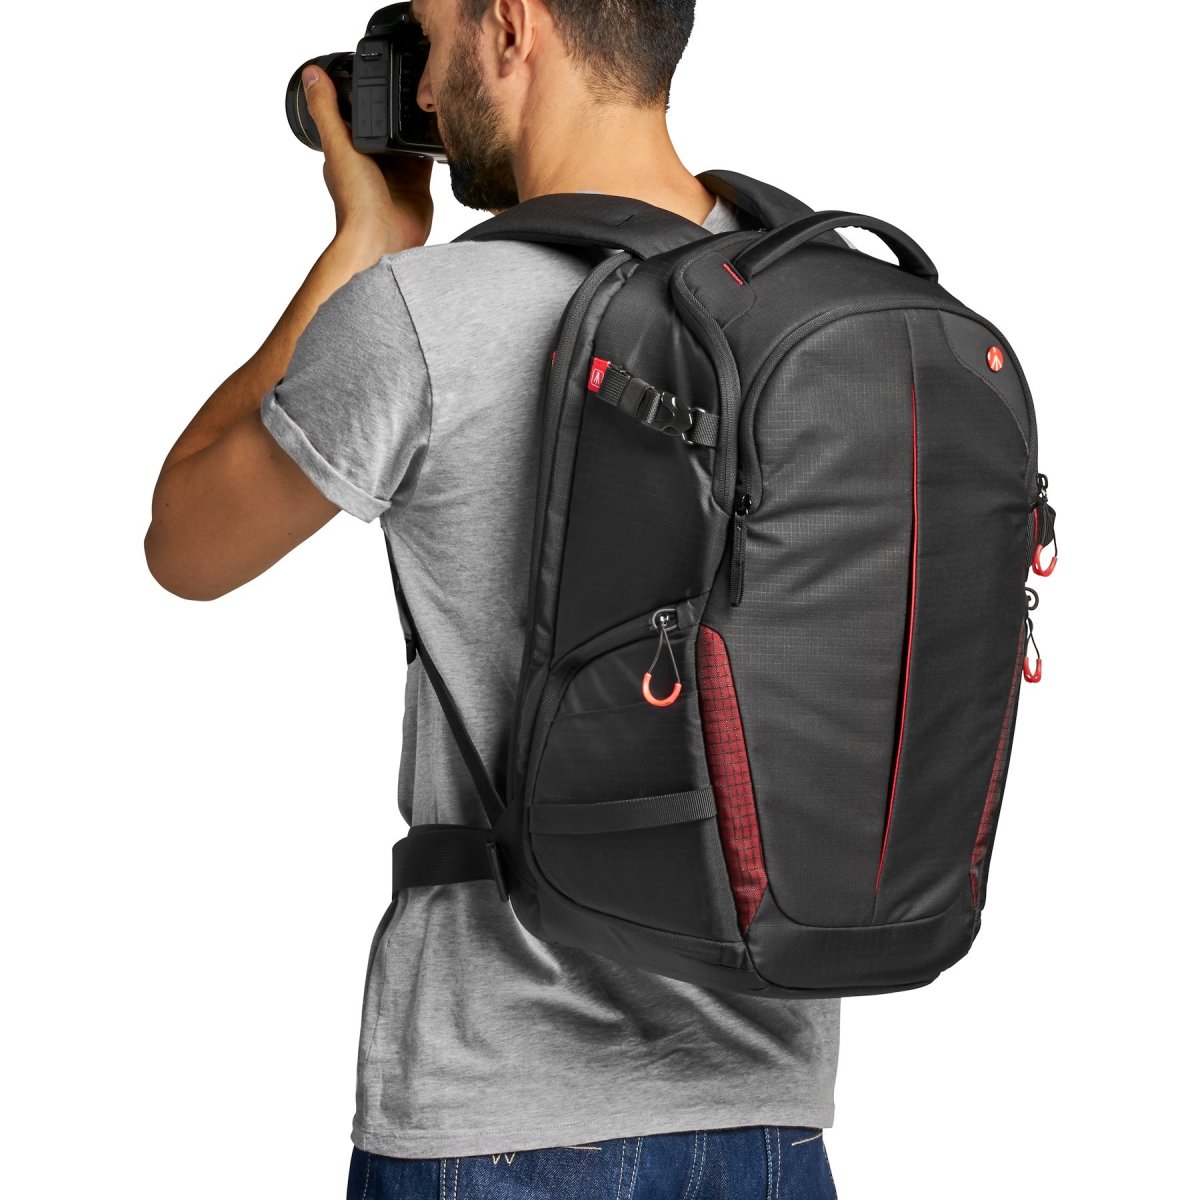 Fotobatoh Manfrotto Pro Light backpack RedBee-310 pro DSLRc nebo dron DJI Mavic series na zádech